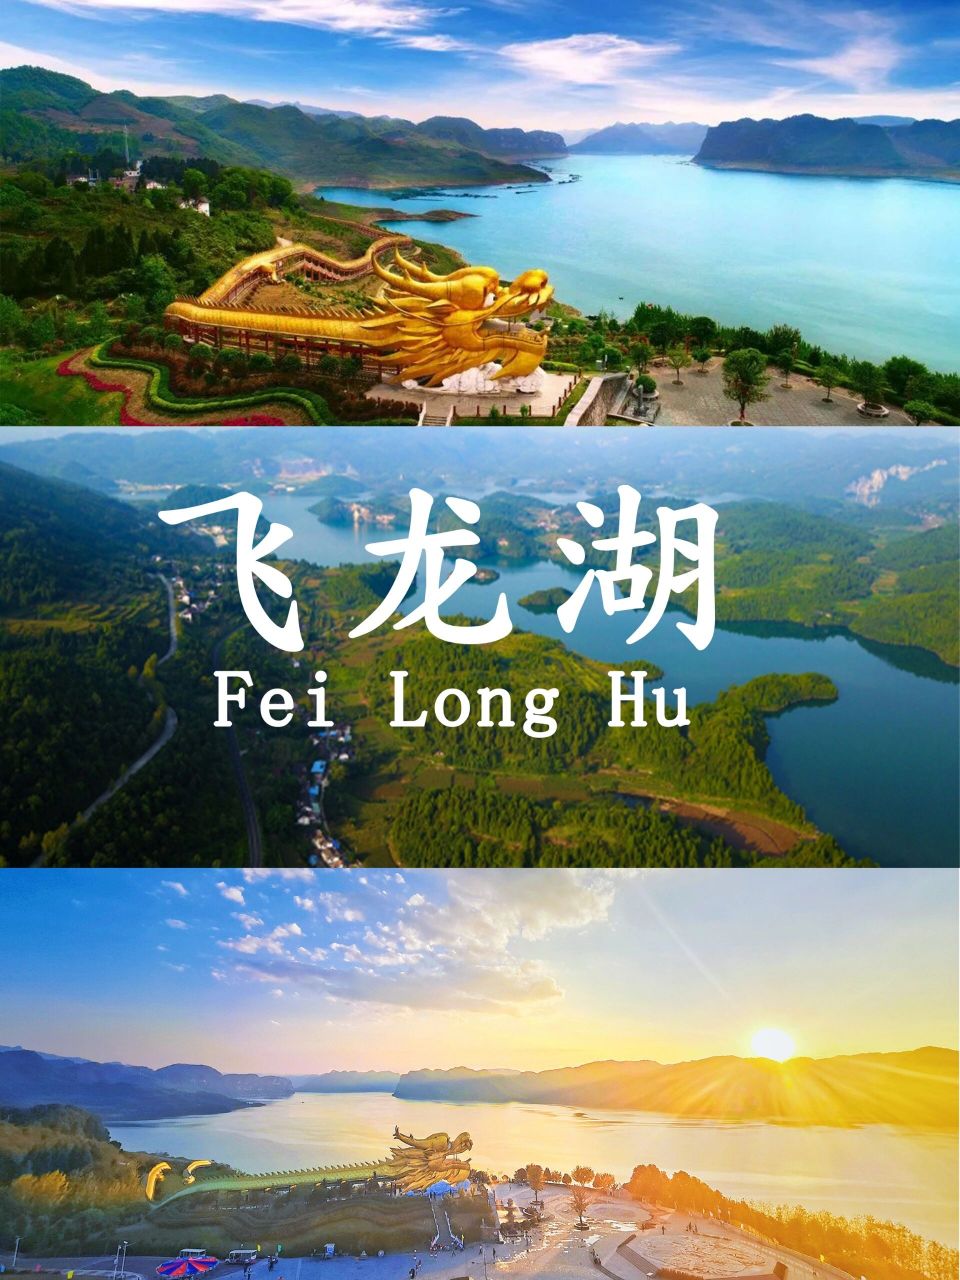 贵州飞龙湖景区图片